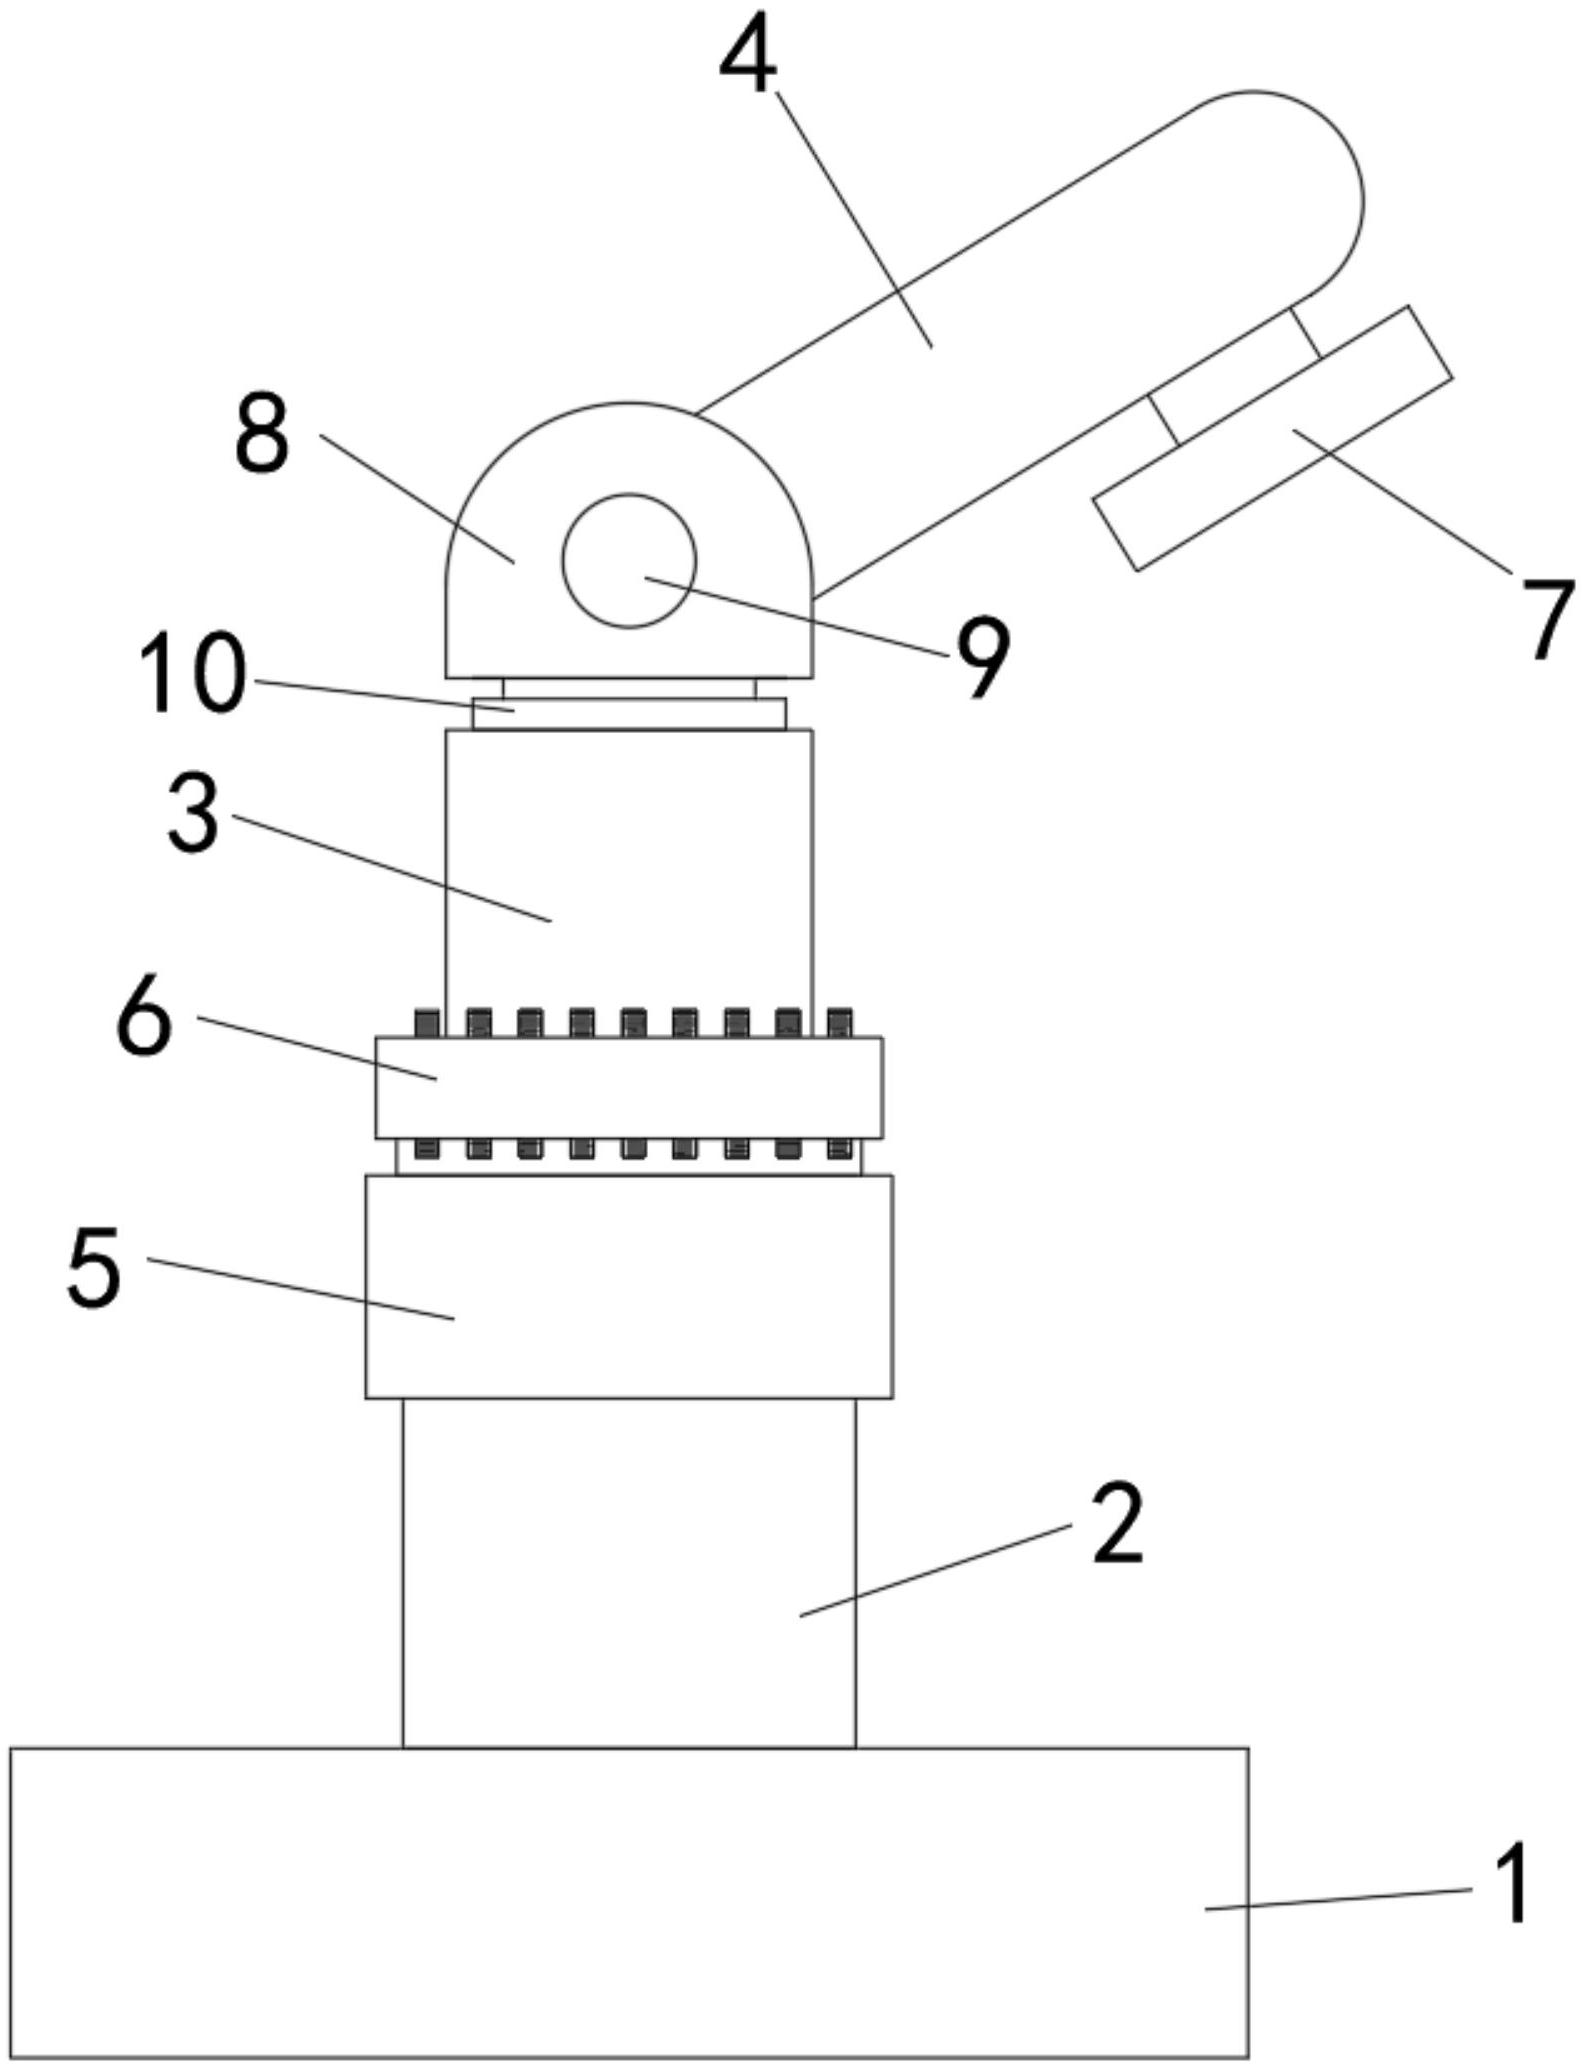 一种橡胶关节的翻边工装专利图